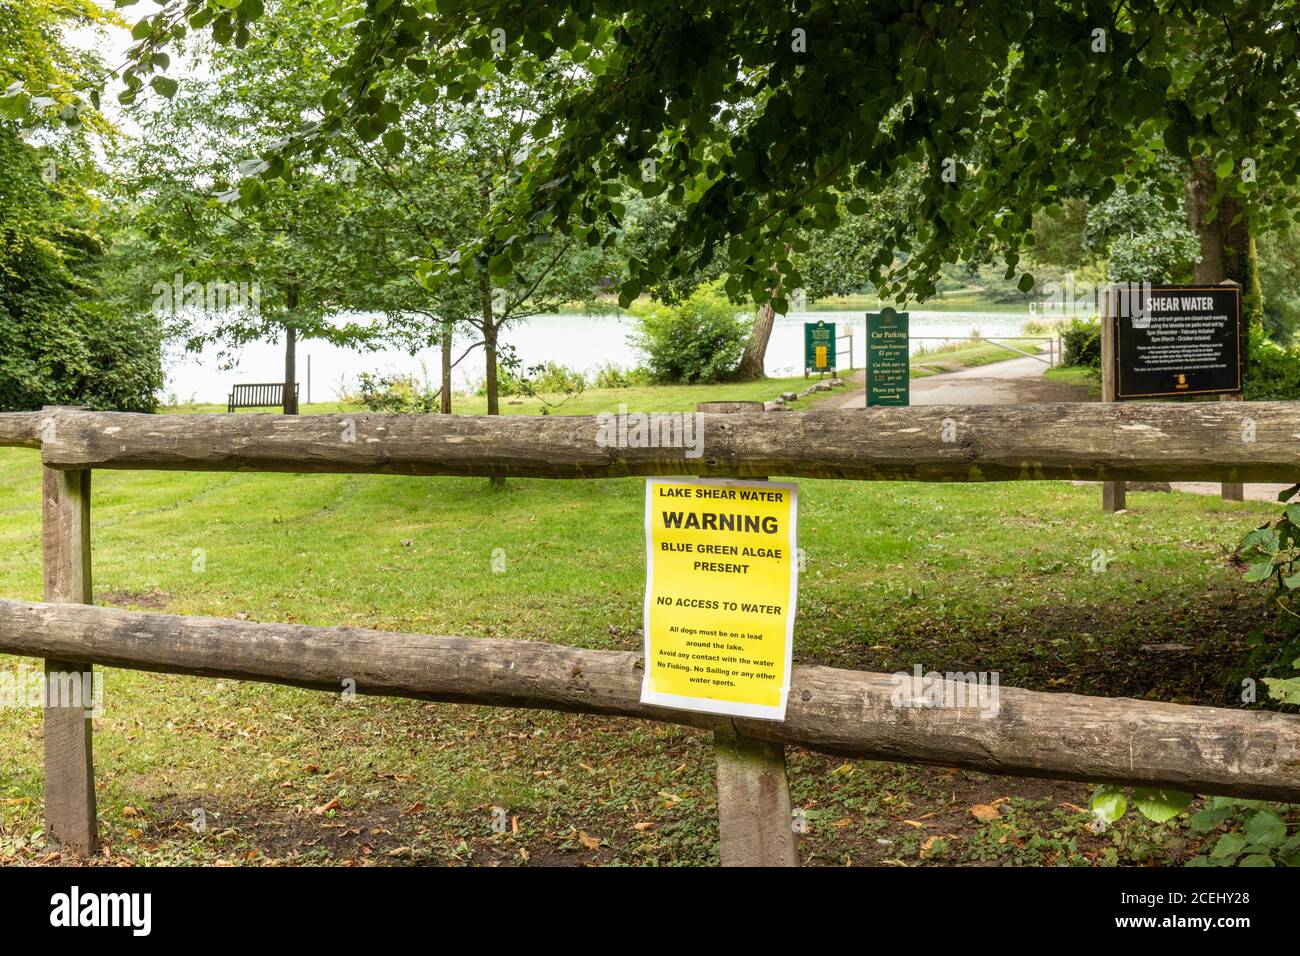 El lago en Shearwater aviso de advertencia sobre algas verdes azules que está presente en el agua y un peligro. Longleat Estate, Wiltshire, Inglaterra, Reino Unido Foto de stock